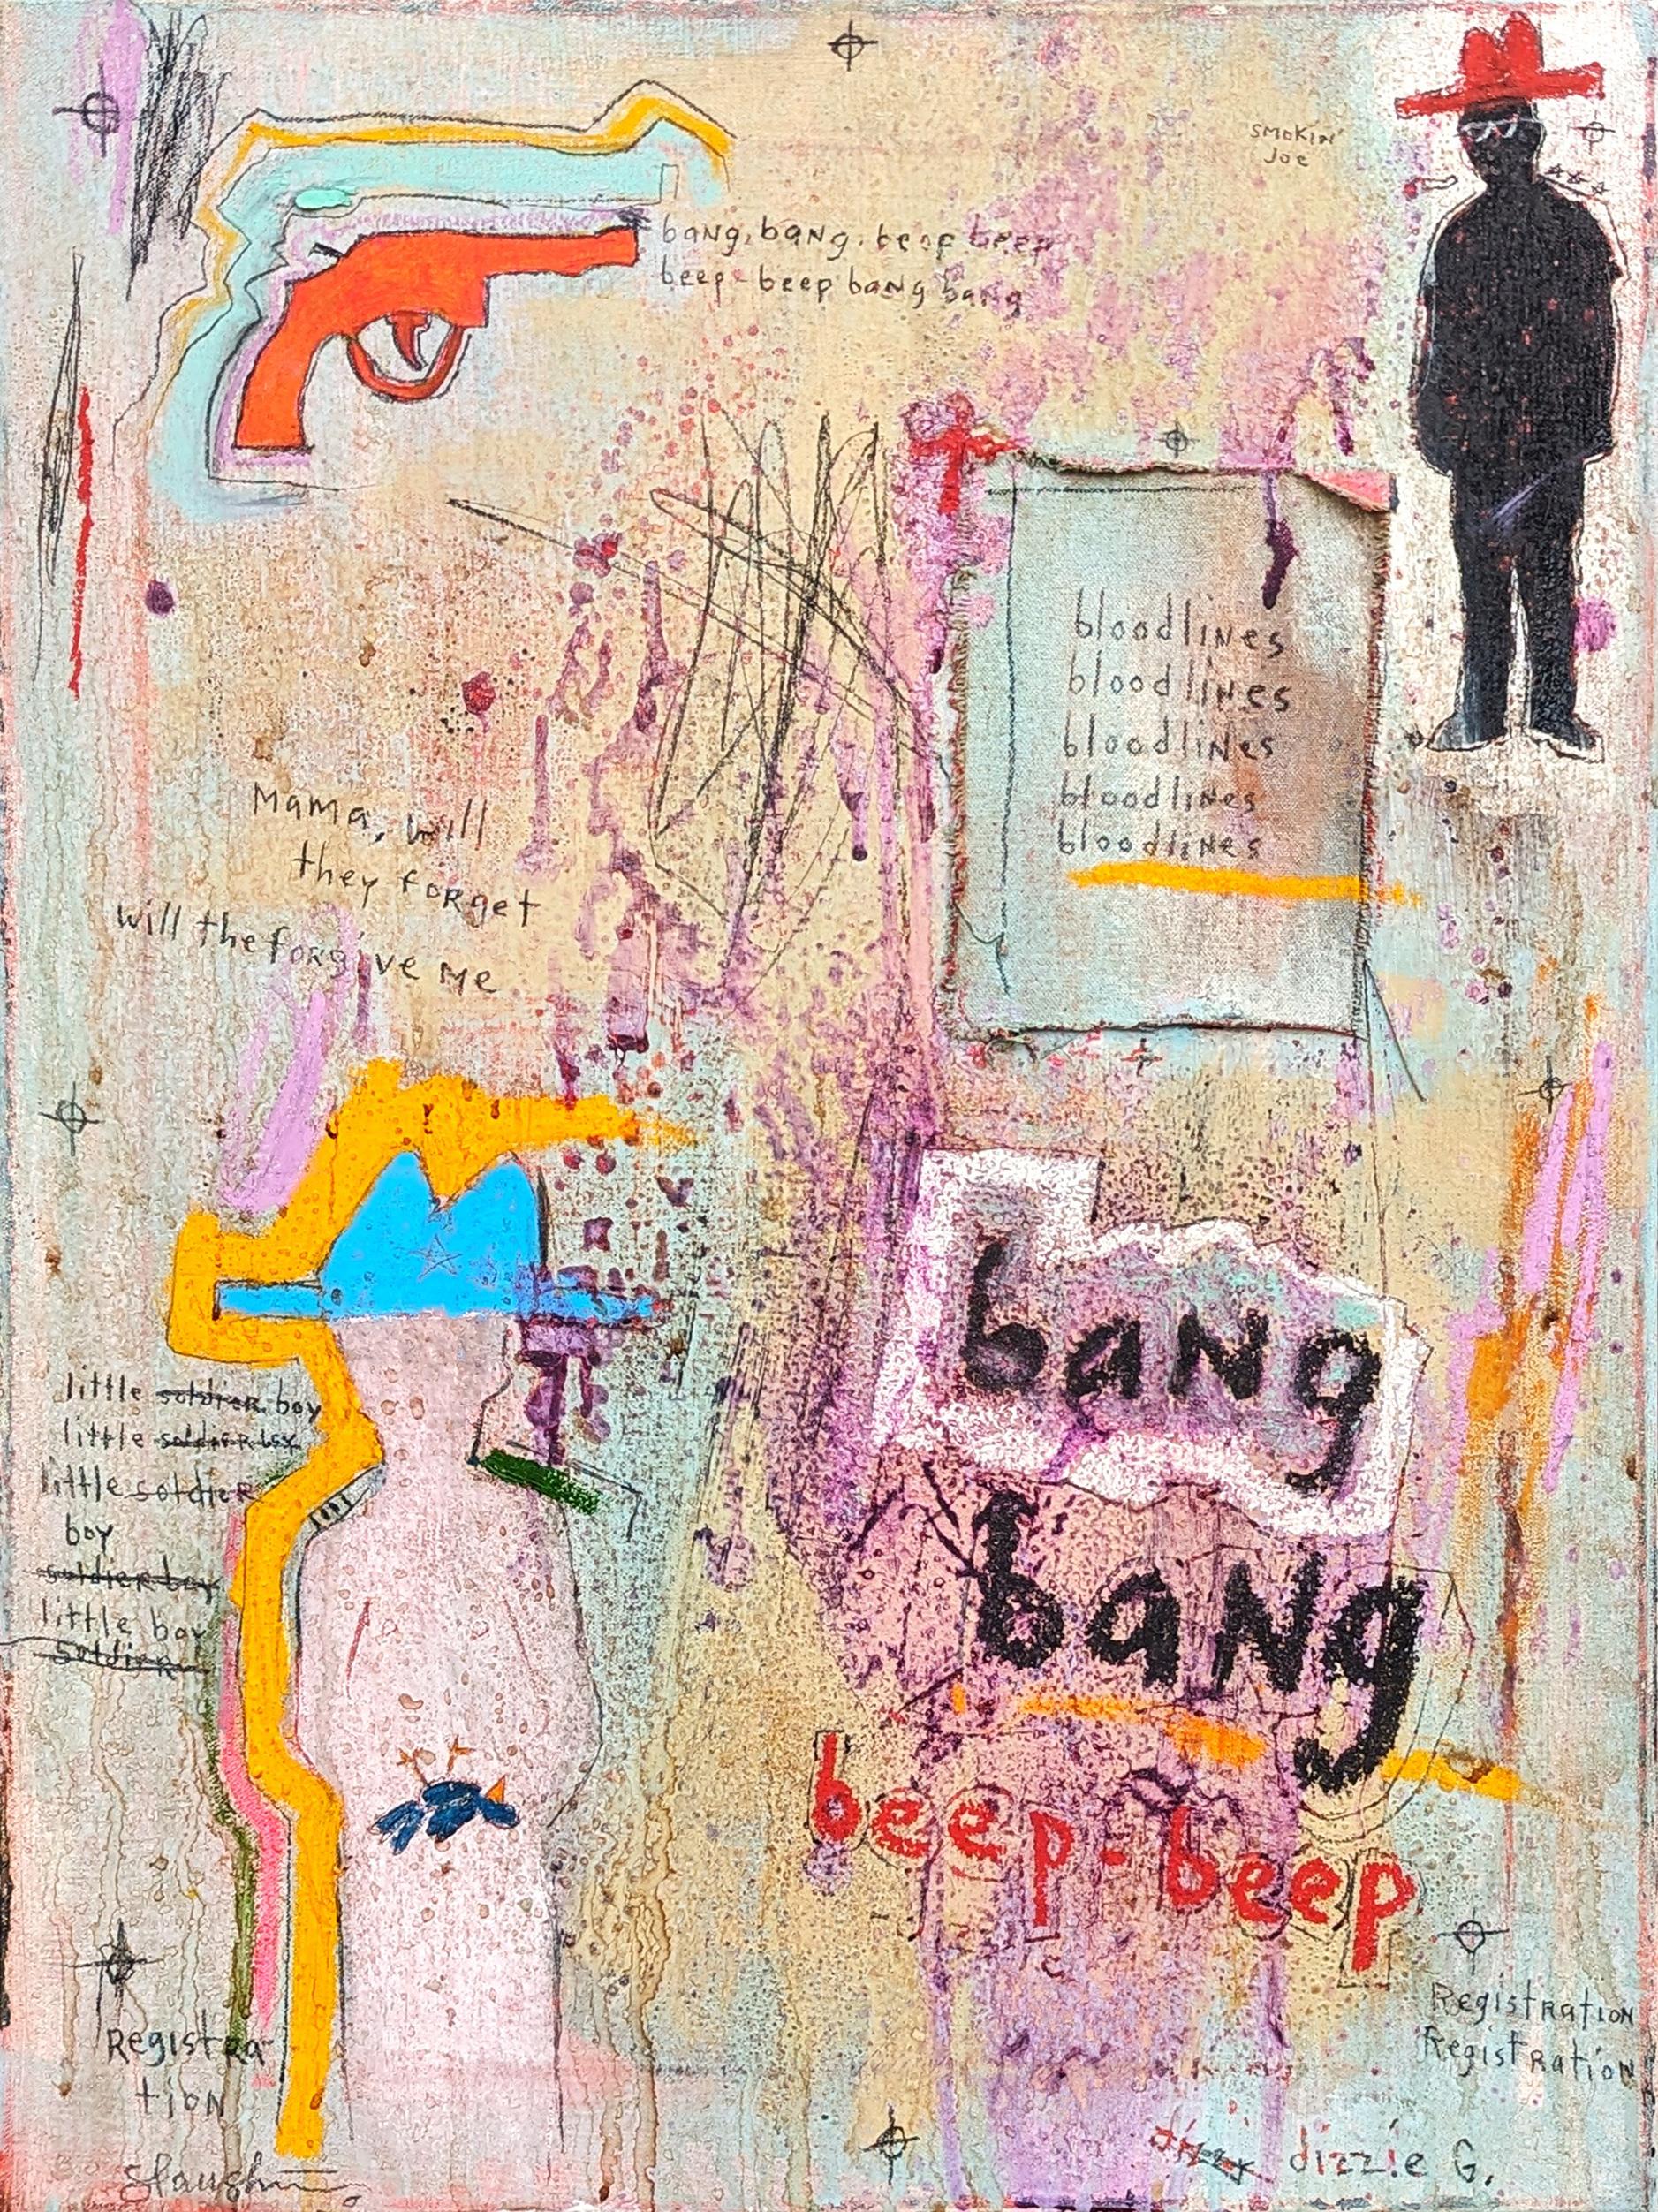 Tra' Slaughter Abstract Painting - “Bang Bang, Beep Beep” Abstract Contemporary Figurative Cowboy Painting